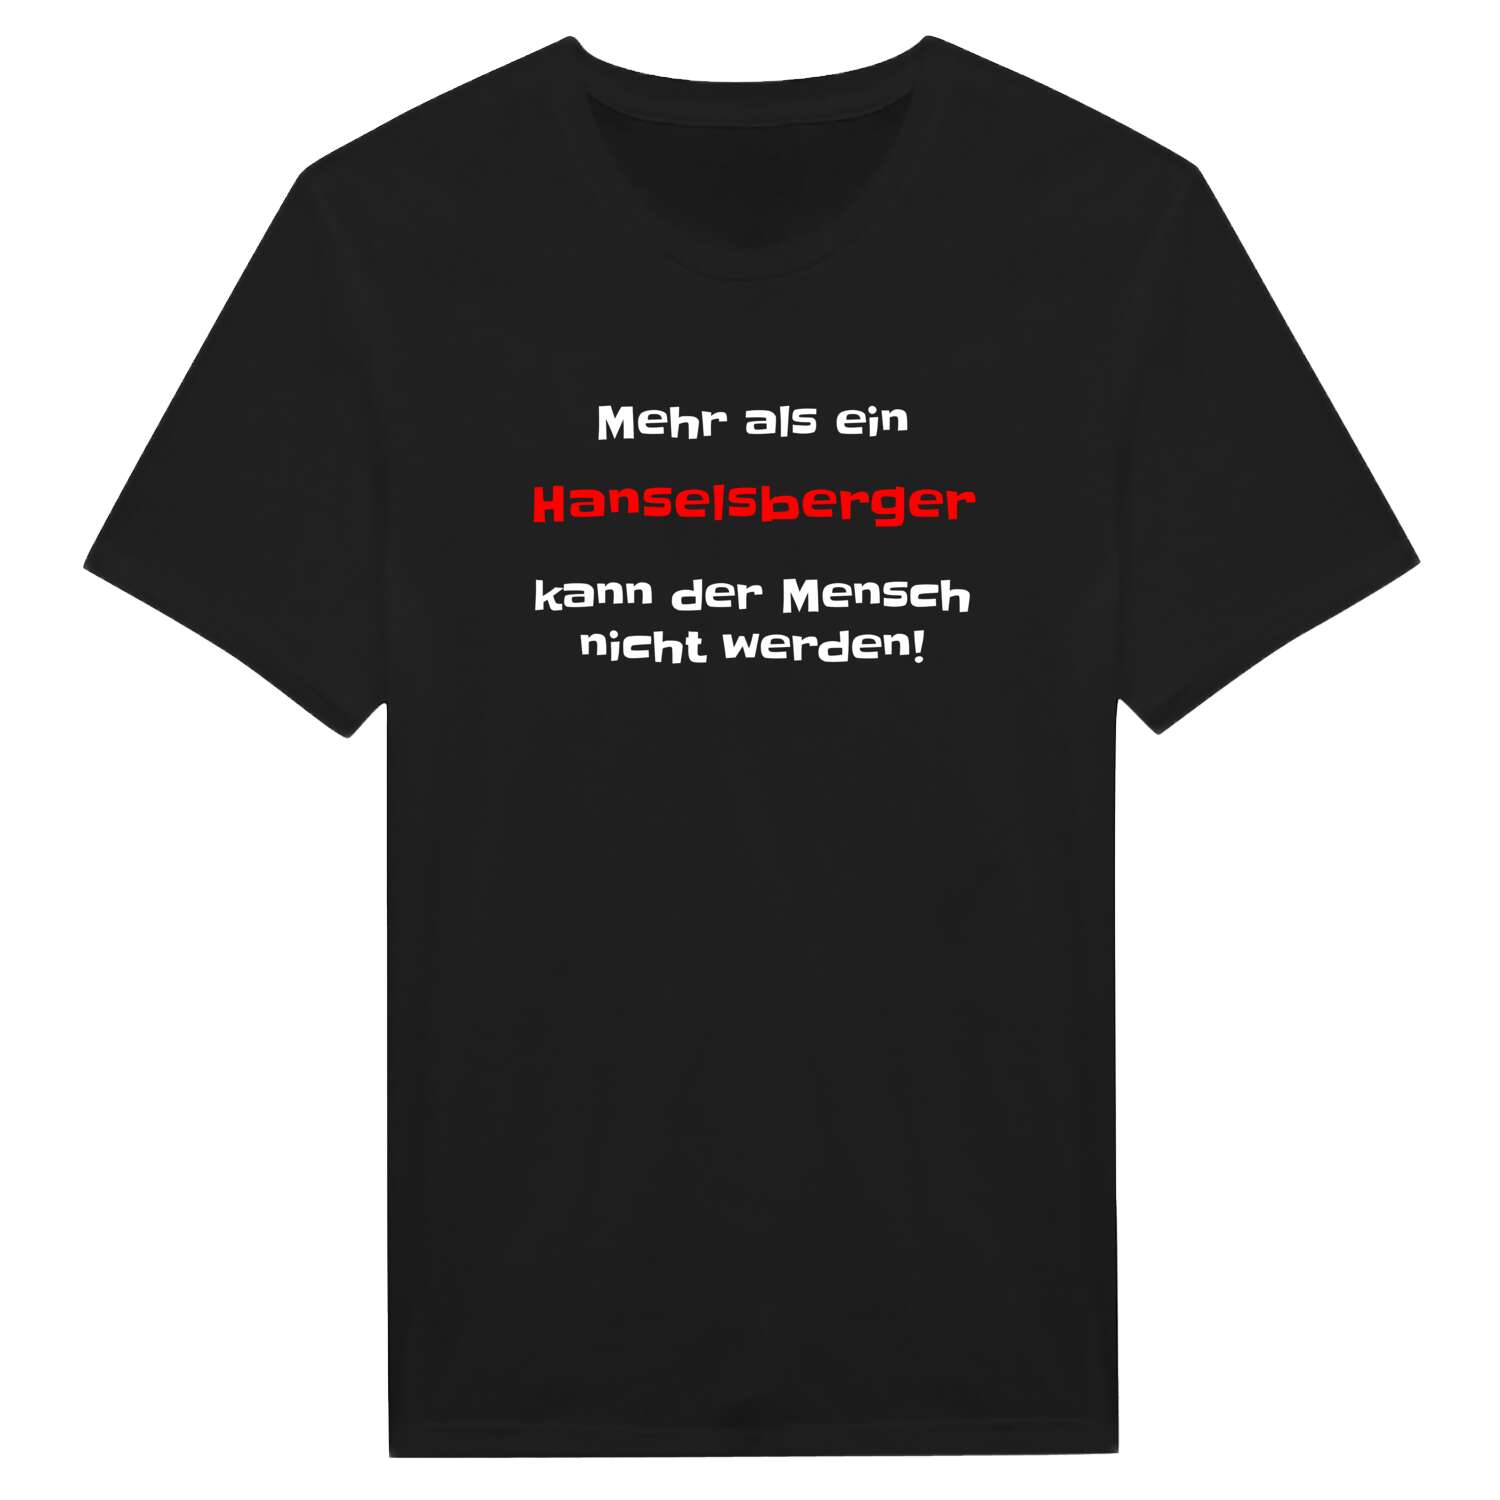 Hanselsberg T-Shirt »Mehr als ein«